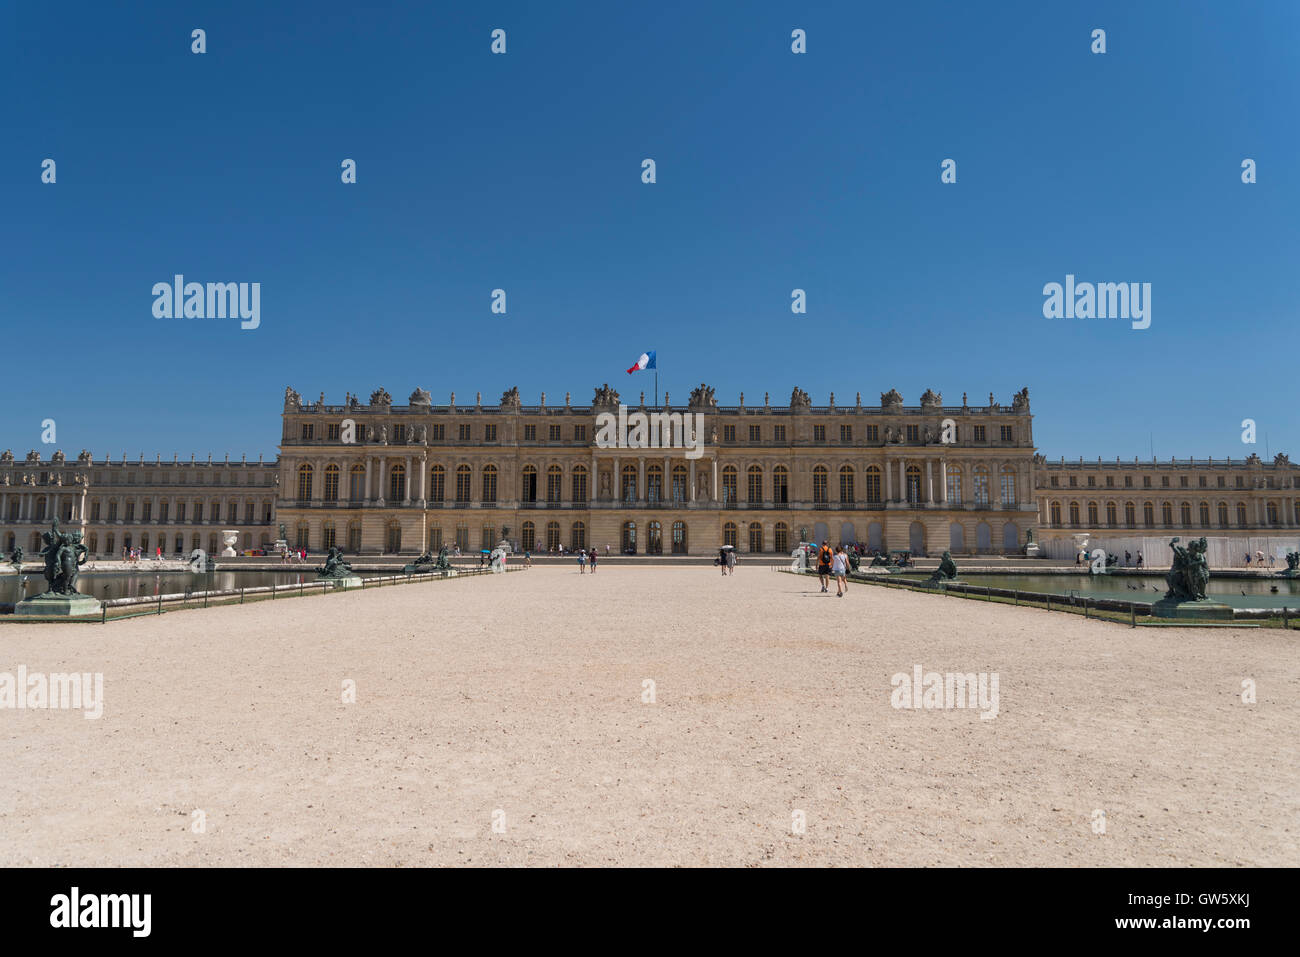 Mid summer at the Palace of Versailles, Château de Versailles, Île-de-France, France Stock Photo